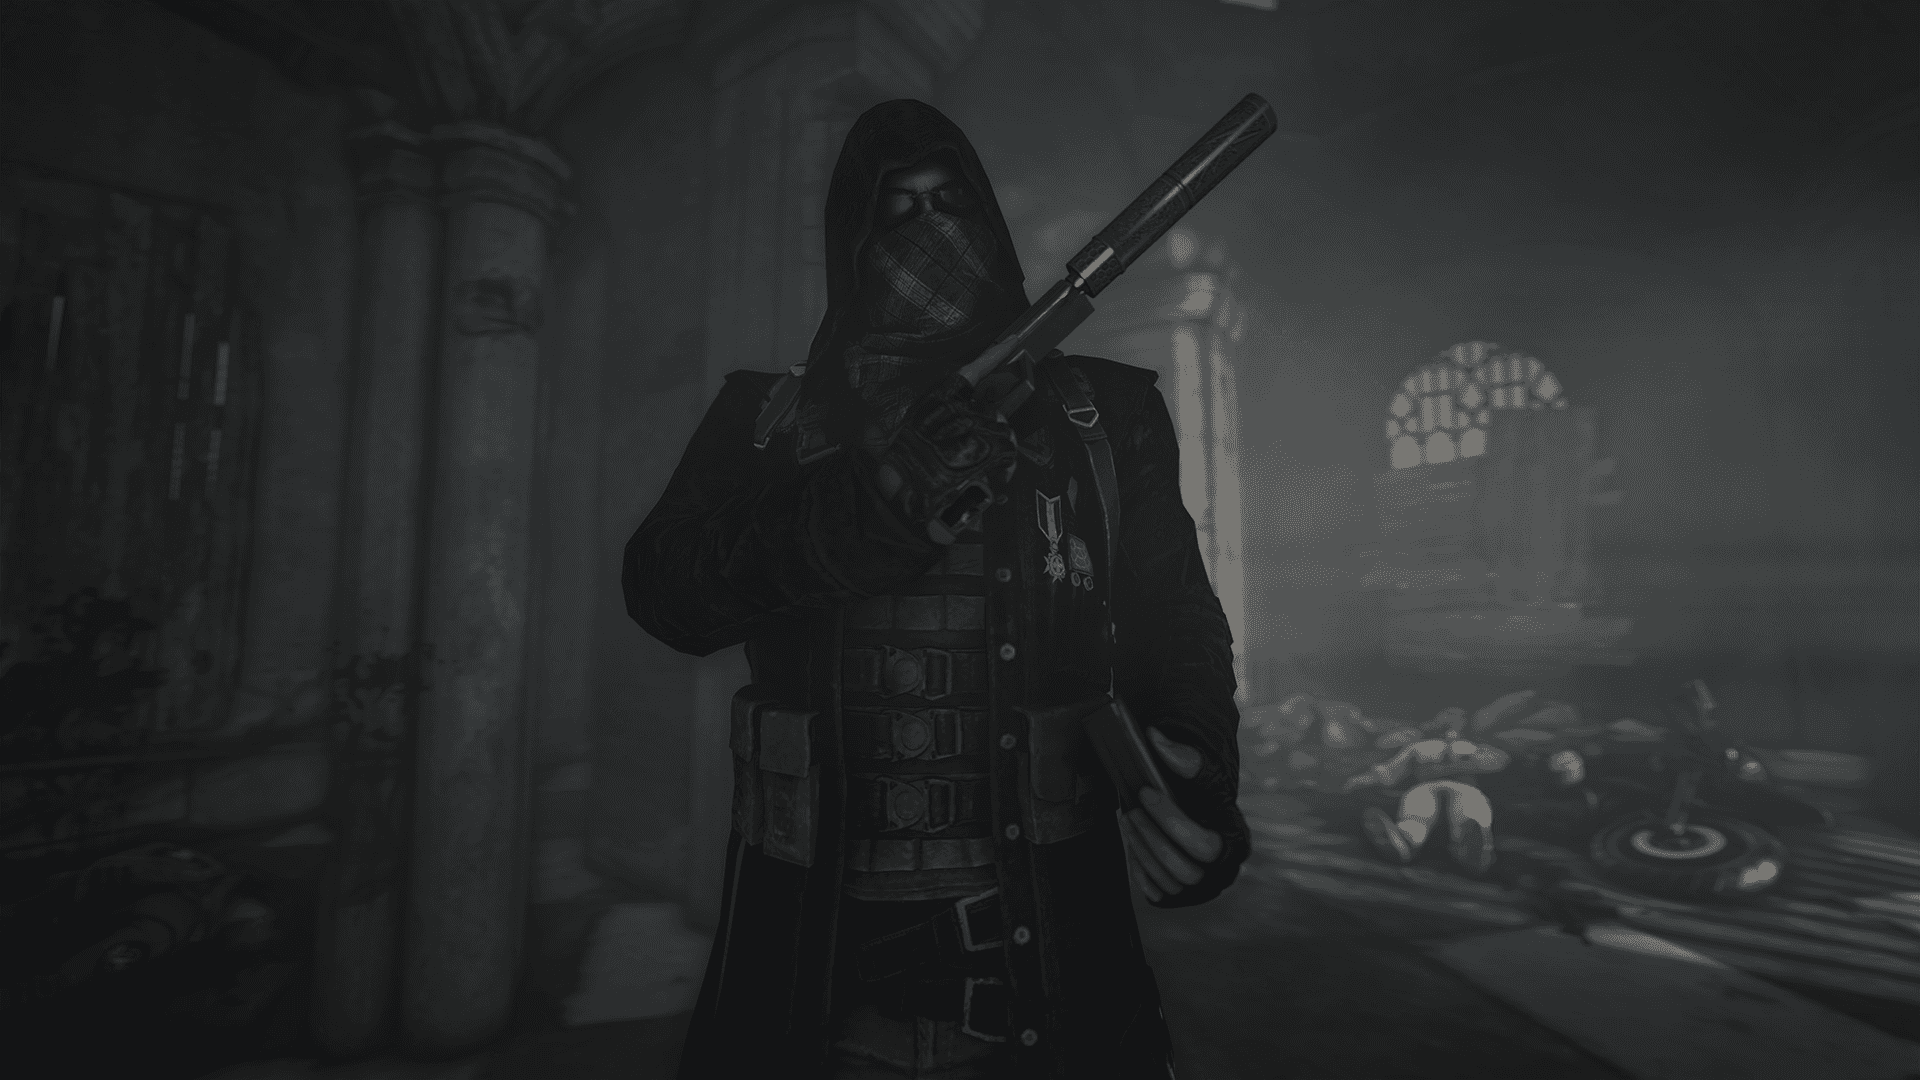 A Man In A Dark Robe Holding A Gun